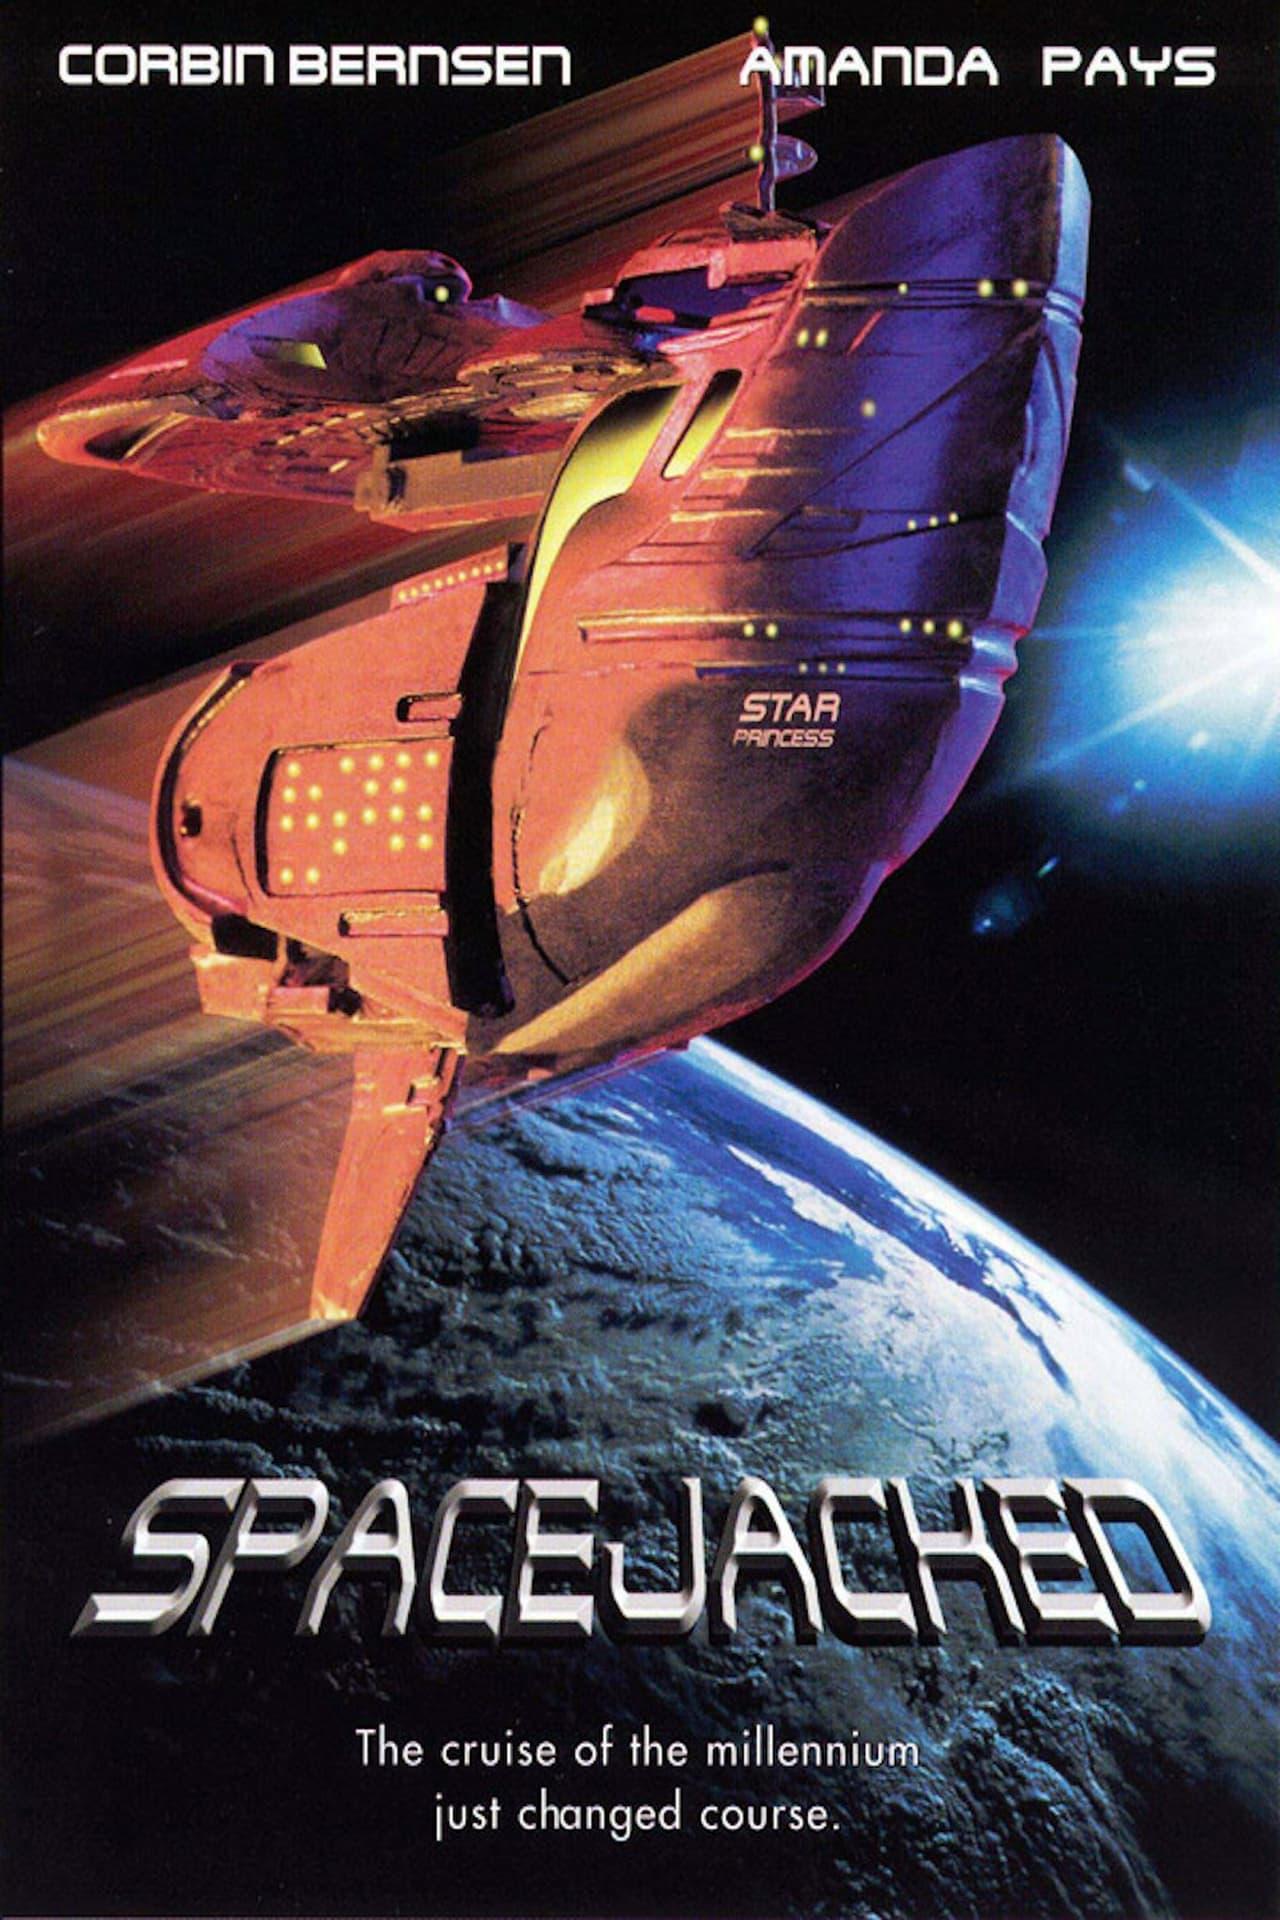 Spacejacked poster